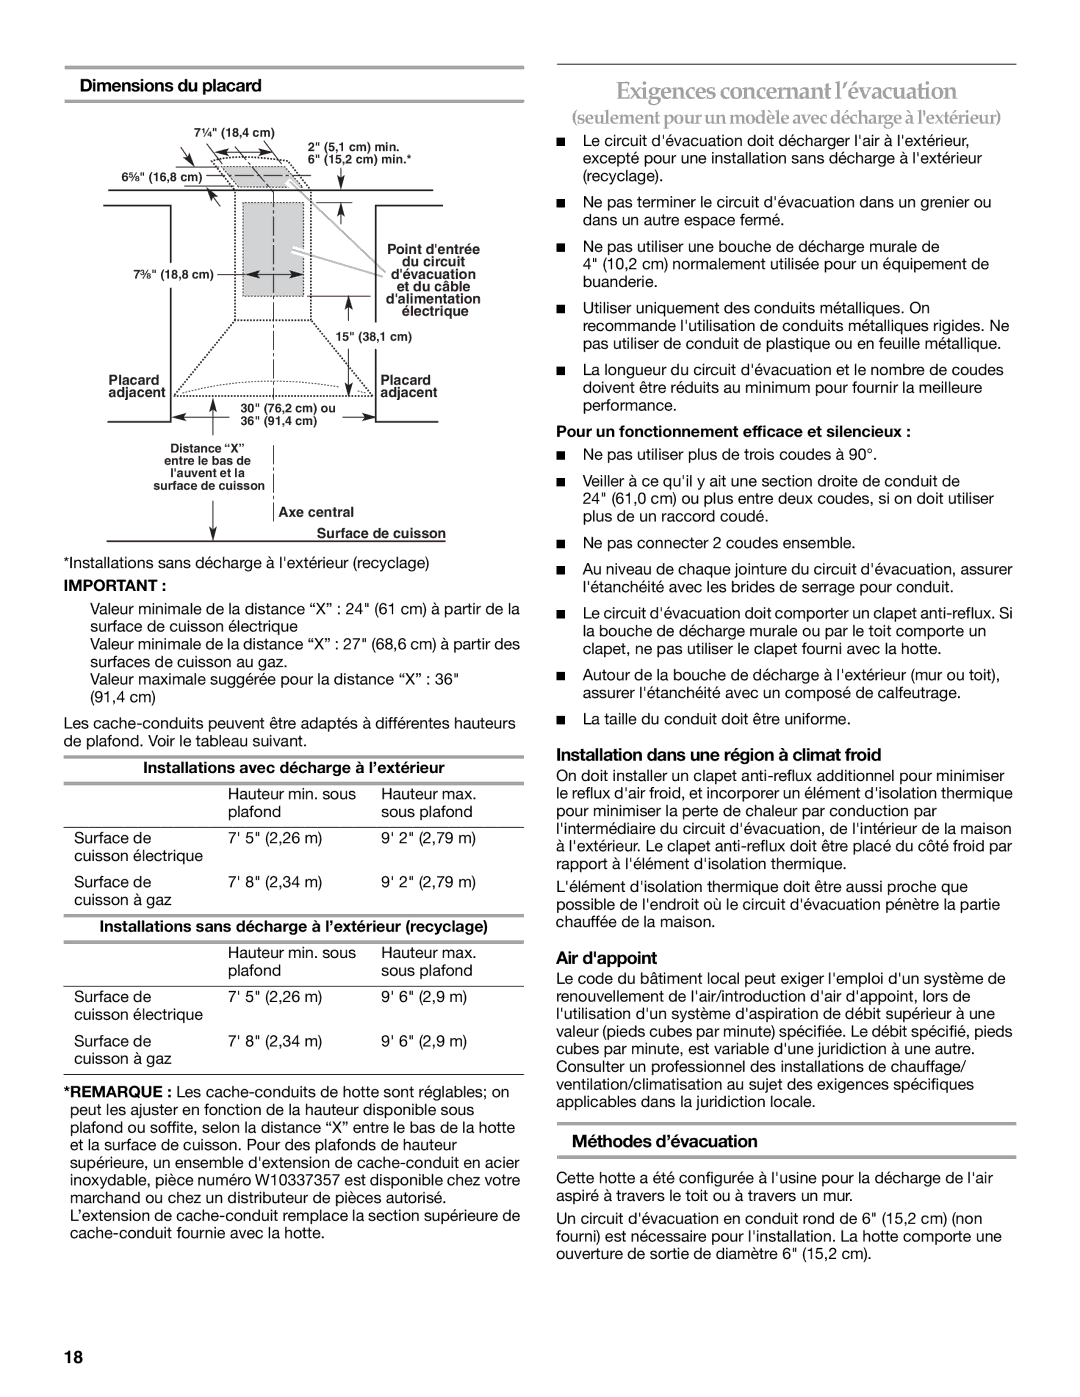 KitchenAid W10322991C Exigences concernant l’évacuation, Dimensions du placard, Air dappoint, Méthodes d’évacuation 